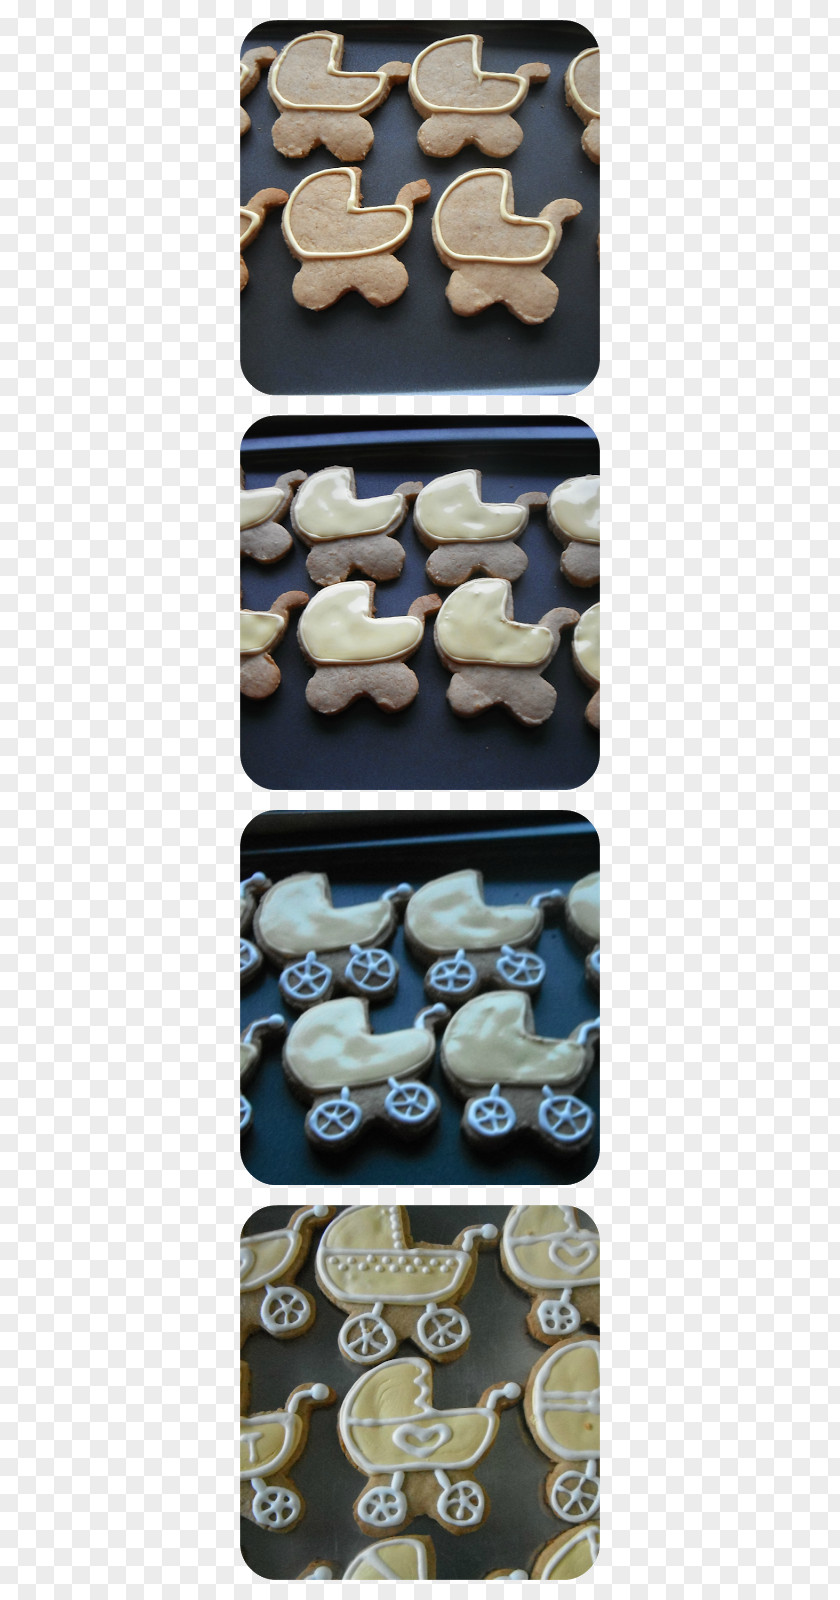 Cookie Crumbs Metal Material PNG